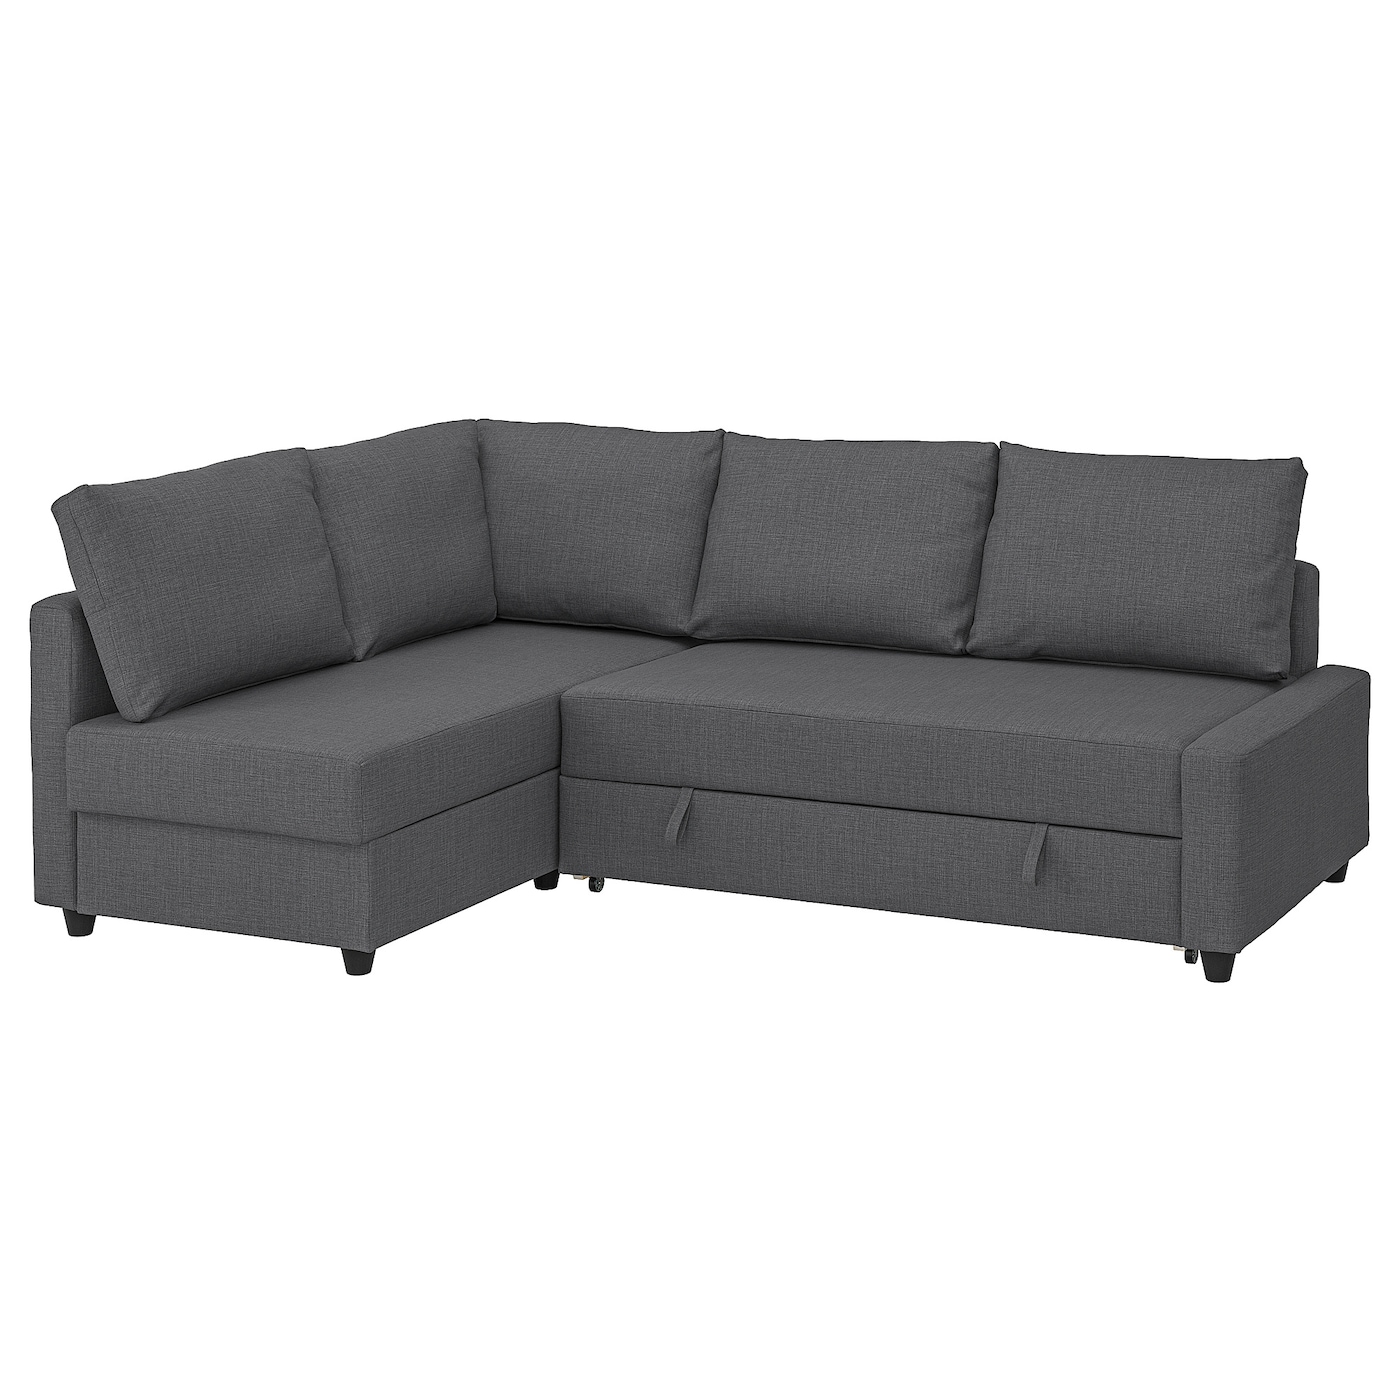 ФРИХЕТЭН Диван-кровать угловой + место для хранения, дополнительные подушки спинки в комплекте/Скифтебо темно-серый FRIHETEN IKEA